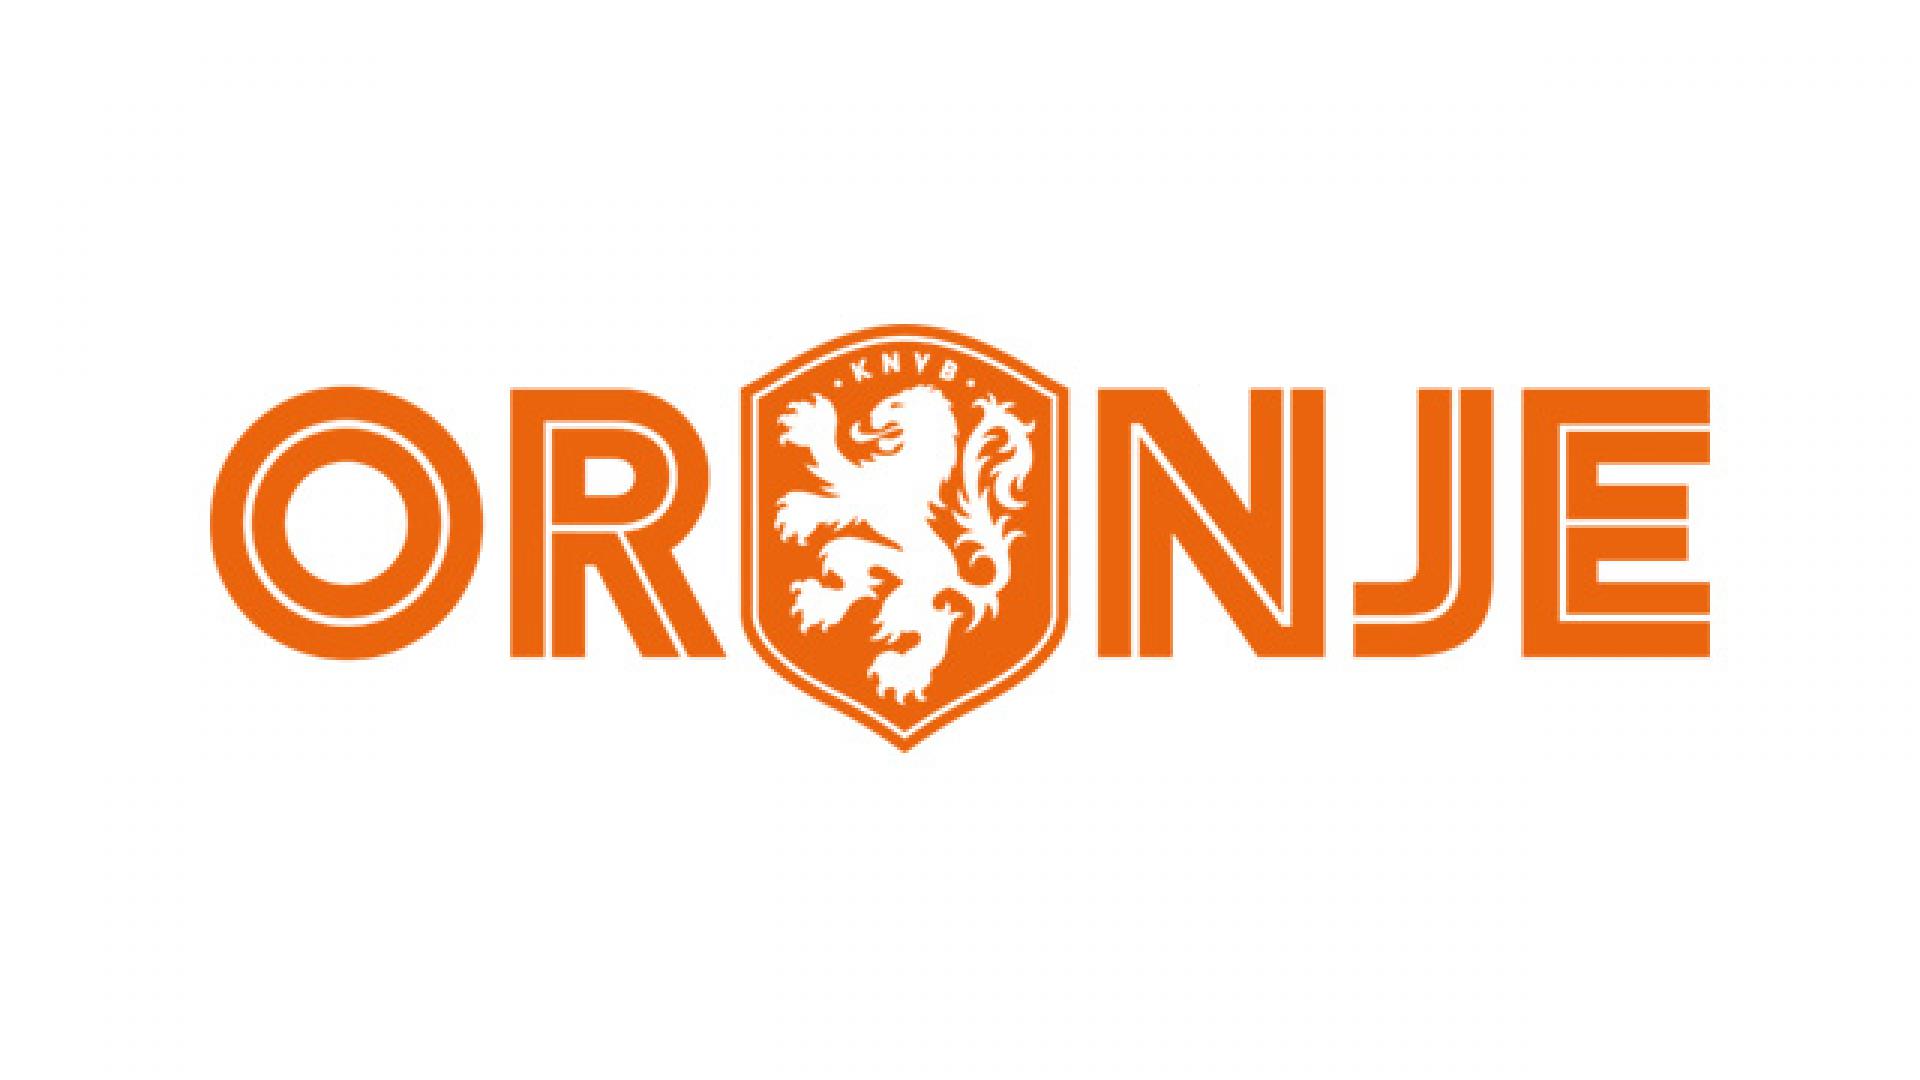 Geheel vernieuwde website OnsOranje.nl is live | KNVB